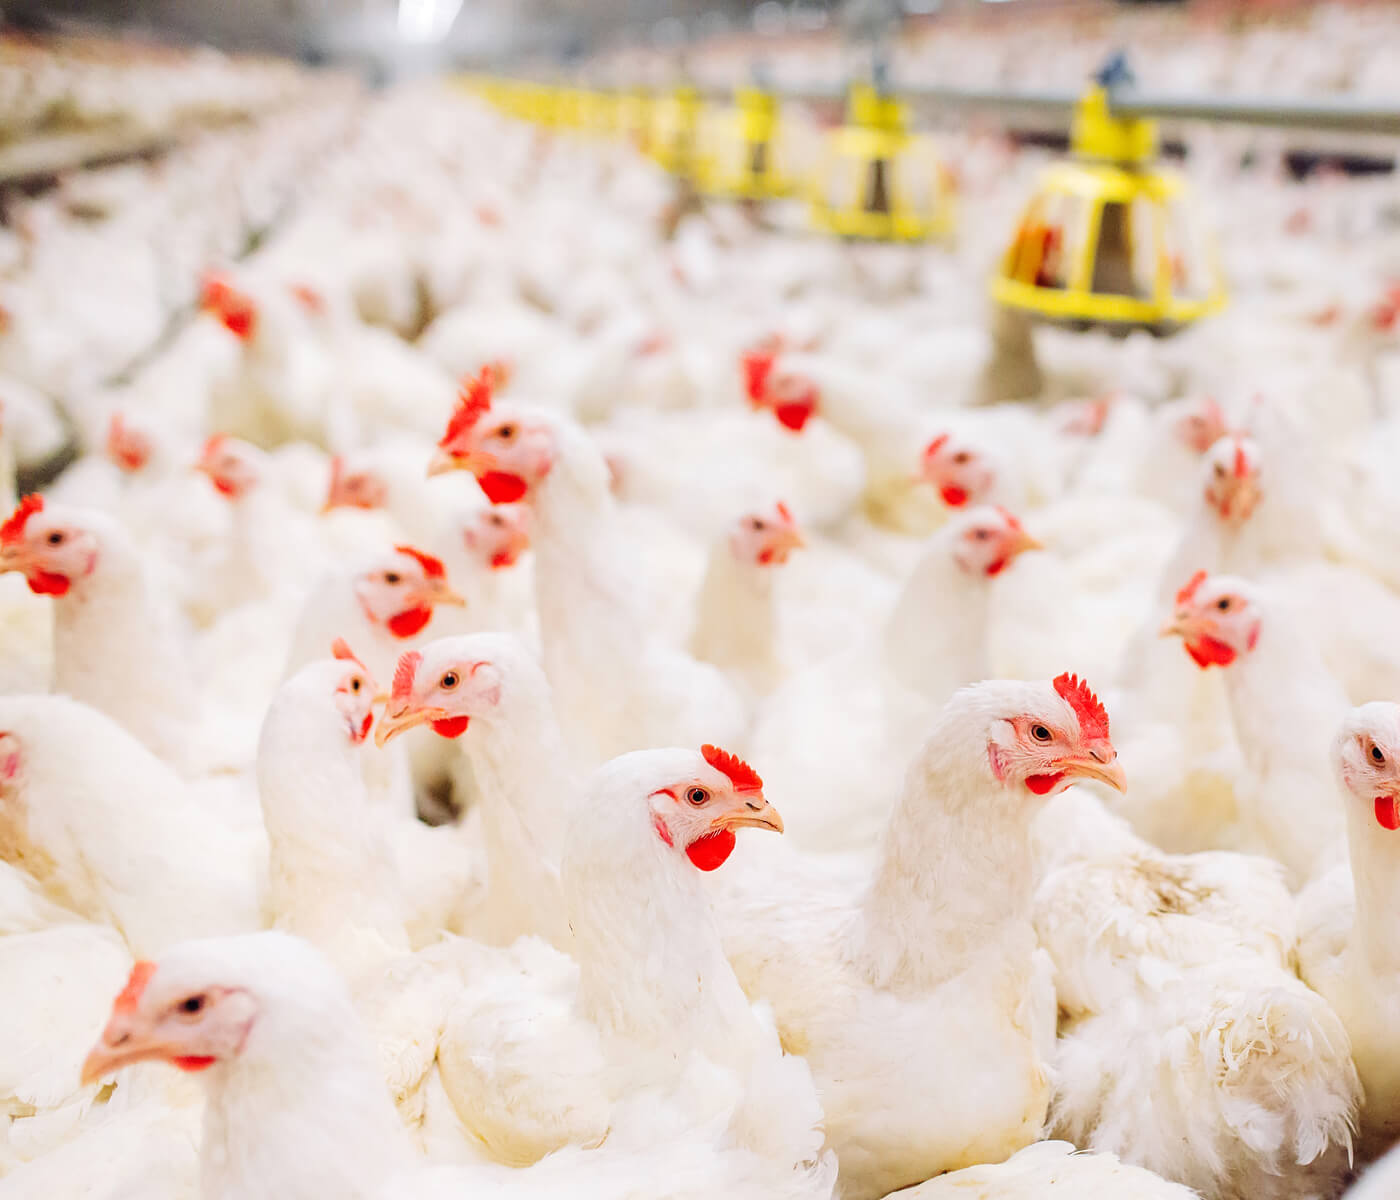 La utilización de Ecobiol® (B. amyloliquefaciens CECT 5940) reduce la microflora patógena en el intestino y mejora el rendimiento de los pollos de engorde